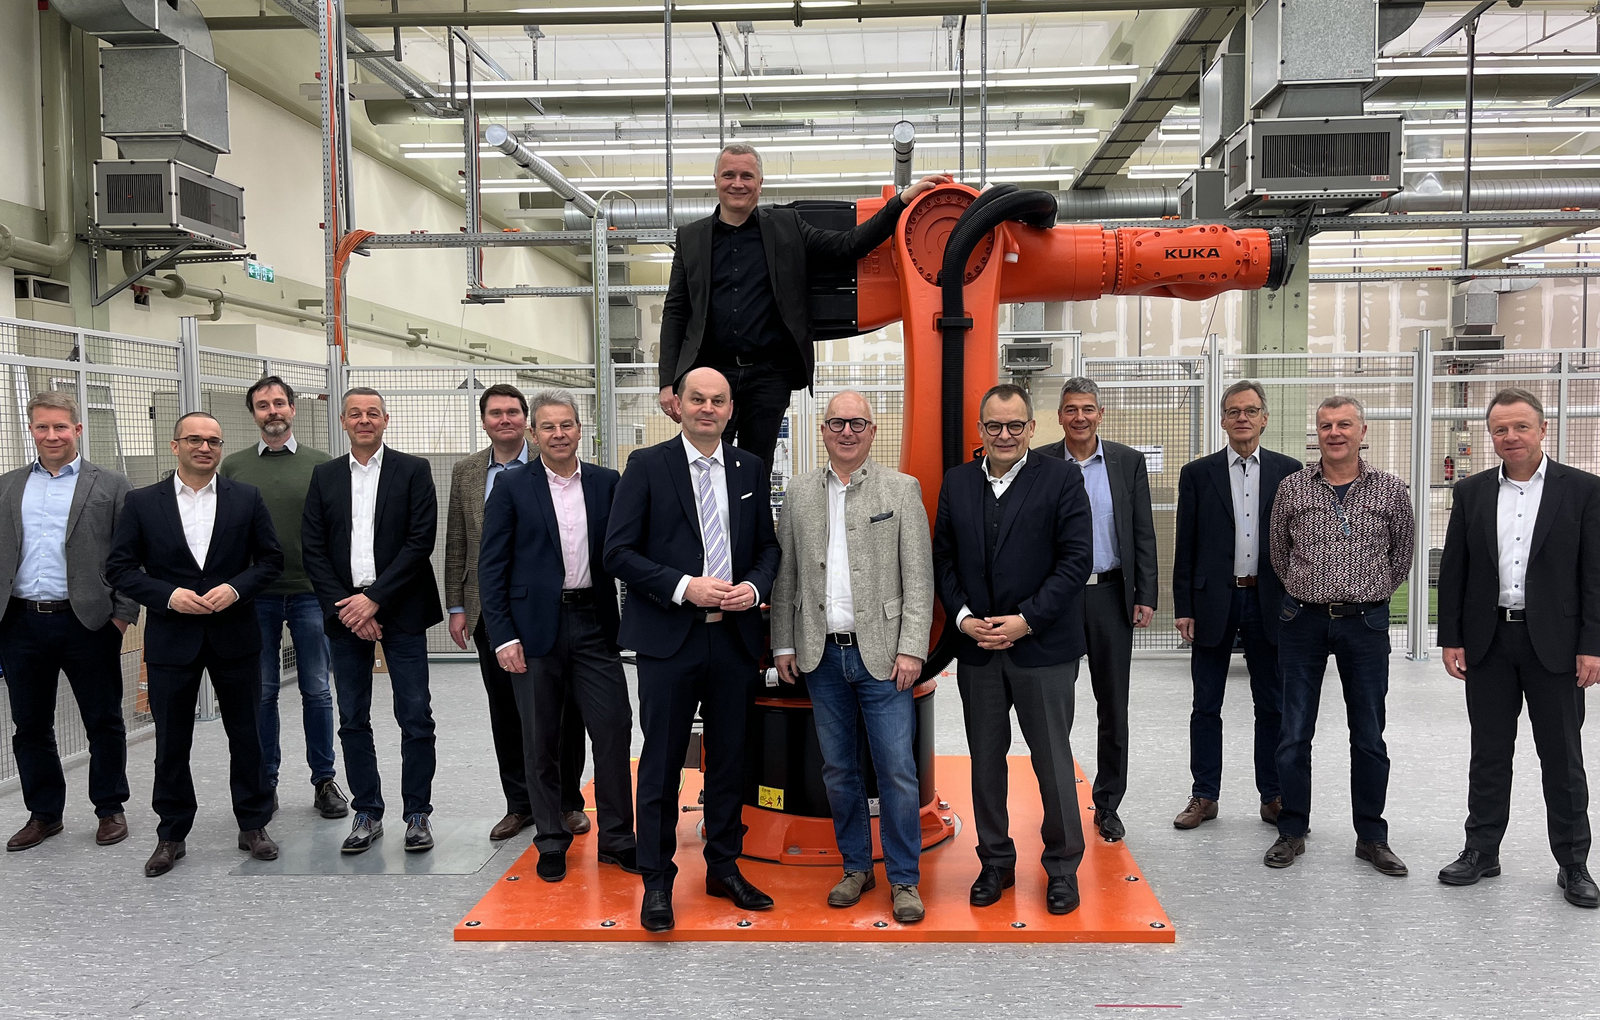 Stiftungsrat und Rektor stehen vor, der Stiftungsprofessor auf orangefarbenem Roboter 